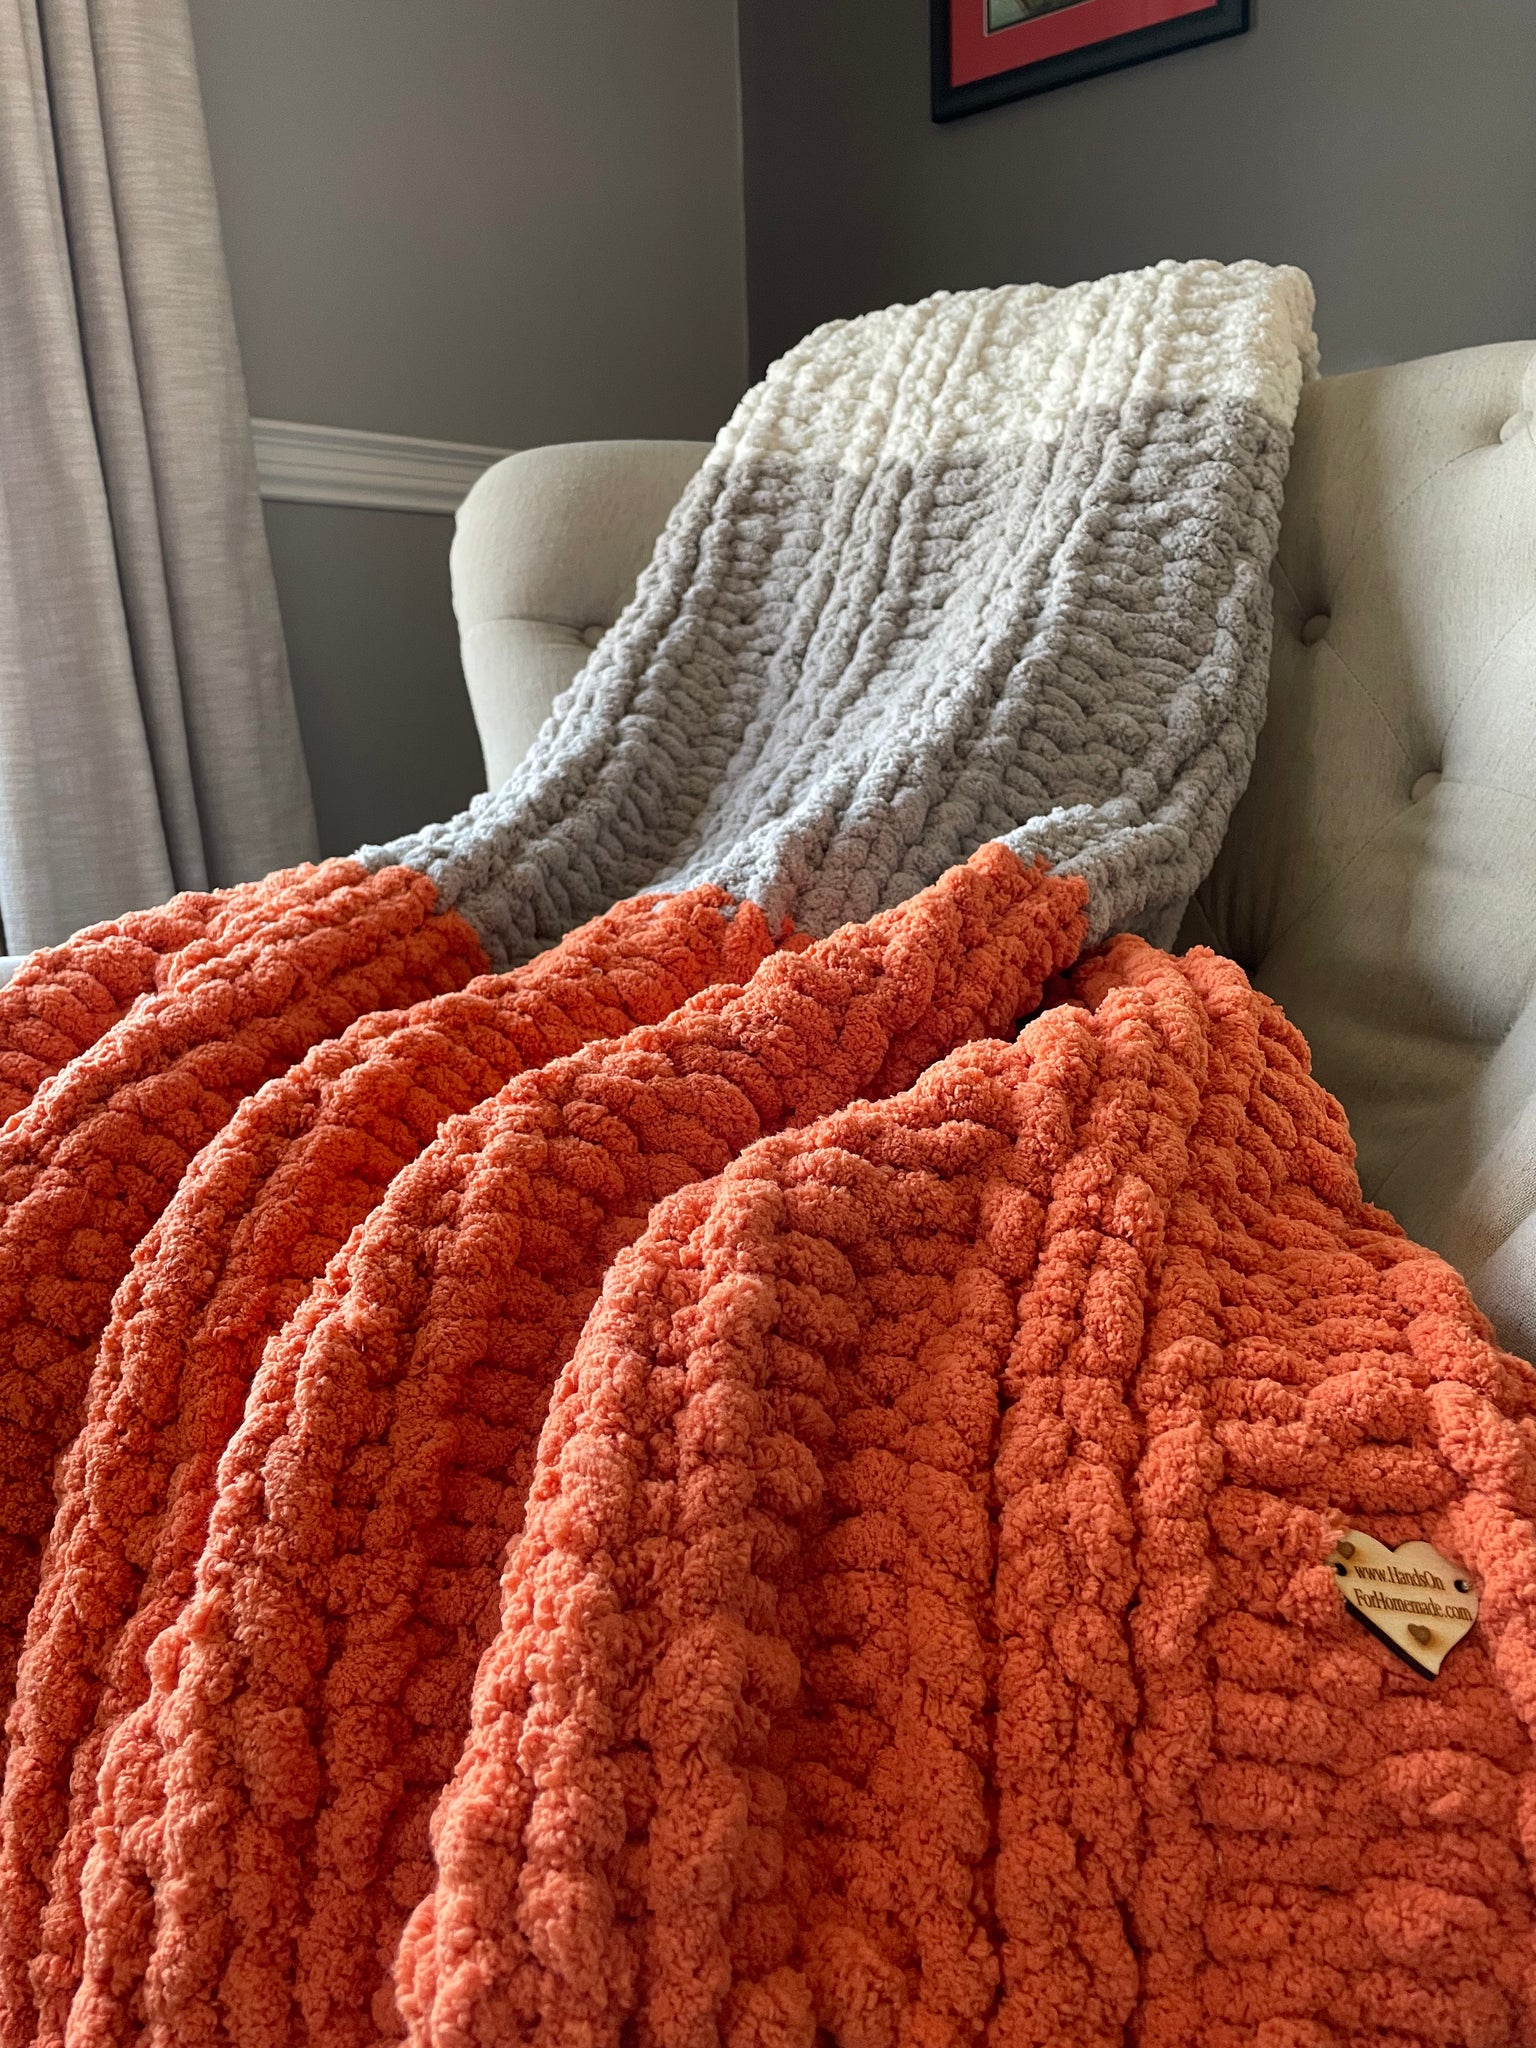 Chunky Knit Blanket  Harvest Orange, Light Gray & Ivory Throw – Hands On  For Homemade